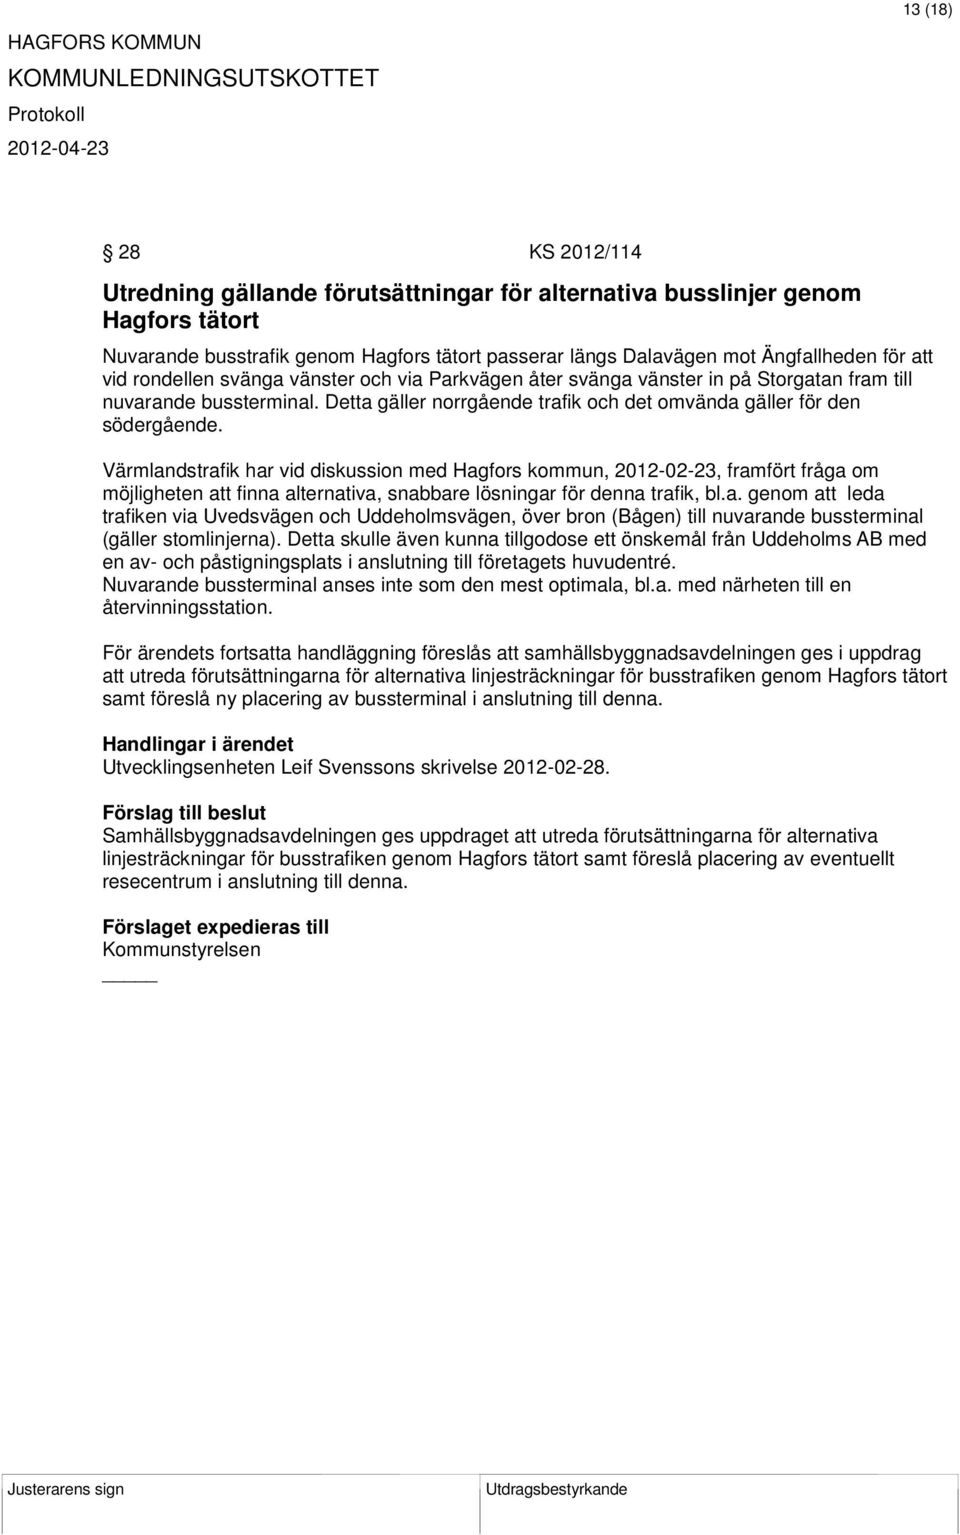 Värmlandstrafik har vid diskussion med Hagfors kommun, 2012-02-23, framfört fråga om möjligheten att finna alternativa, snabbare lösningar för denna trafik, bl.a. genom att leda trafiken via Uvedsvägen och Uddeholmsvägen, över bron (Bågen) till nuvarande bussterminal (gäller stomlinjerna).